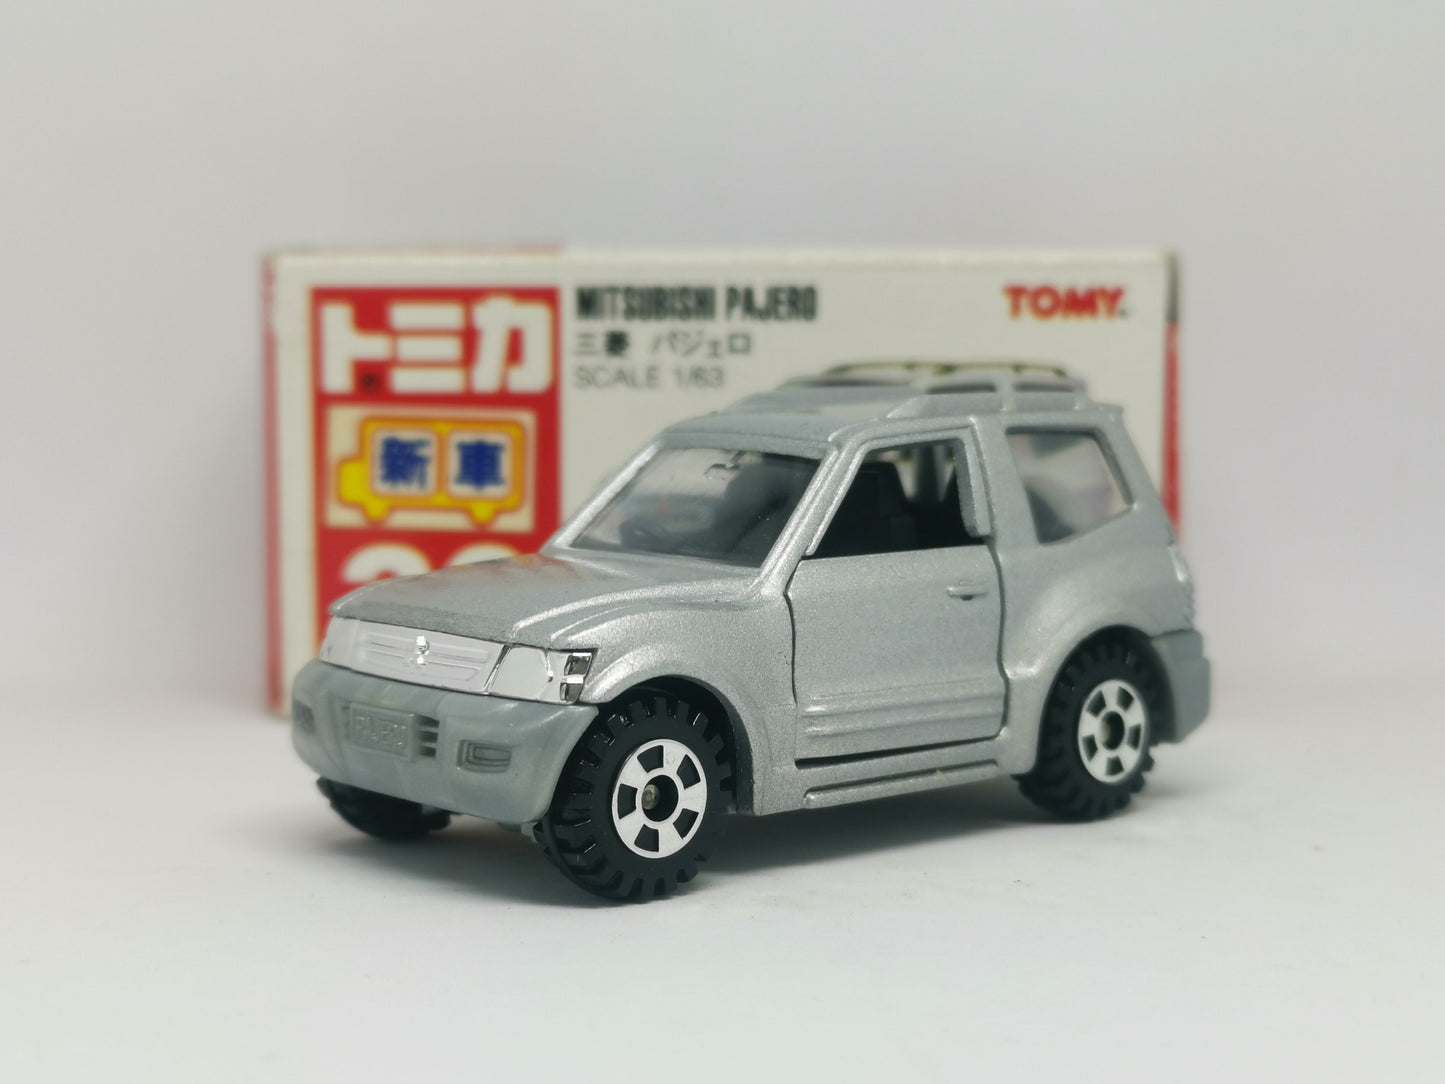 Tomica #30 Mitsubishi Pajero Made in Japan